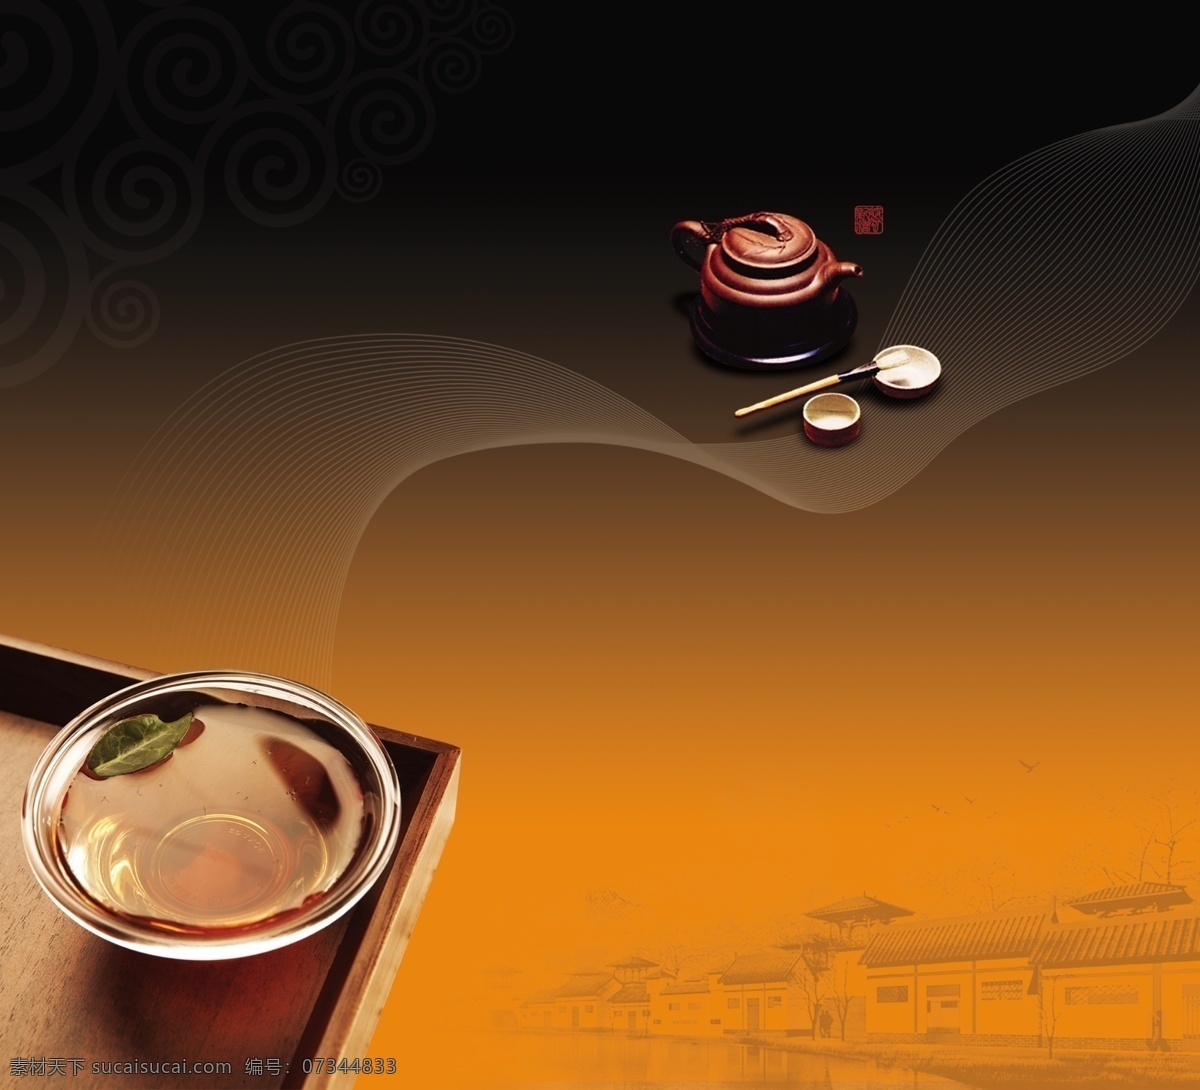 茶具 广告 杯子 茶道画册 茶具广告 茶文化 广告设计模板 毛笔 源文件 其他海报设计